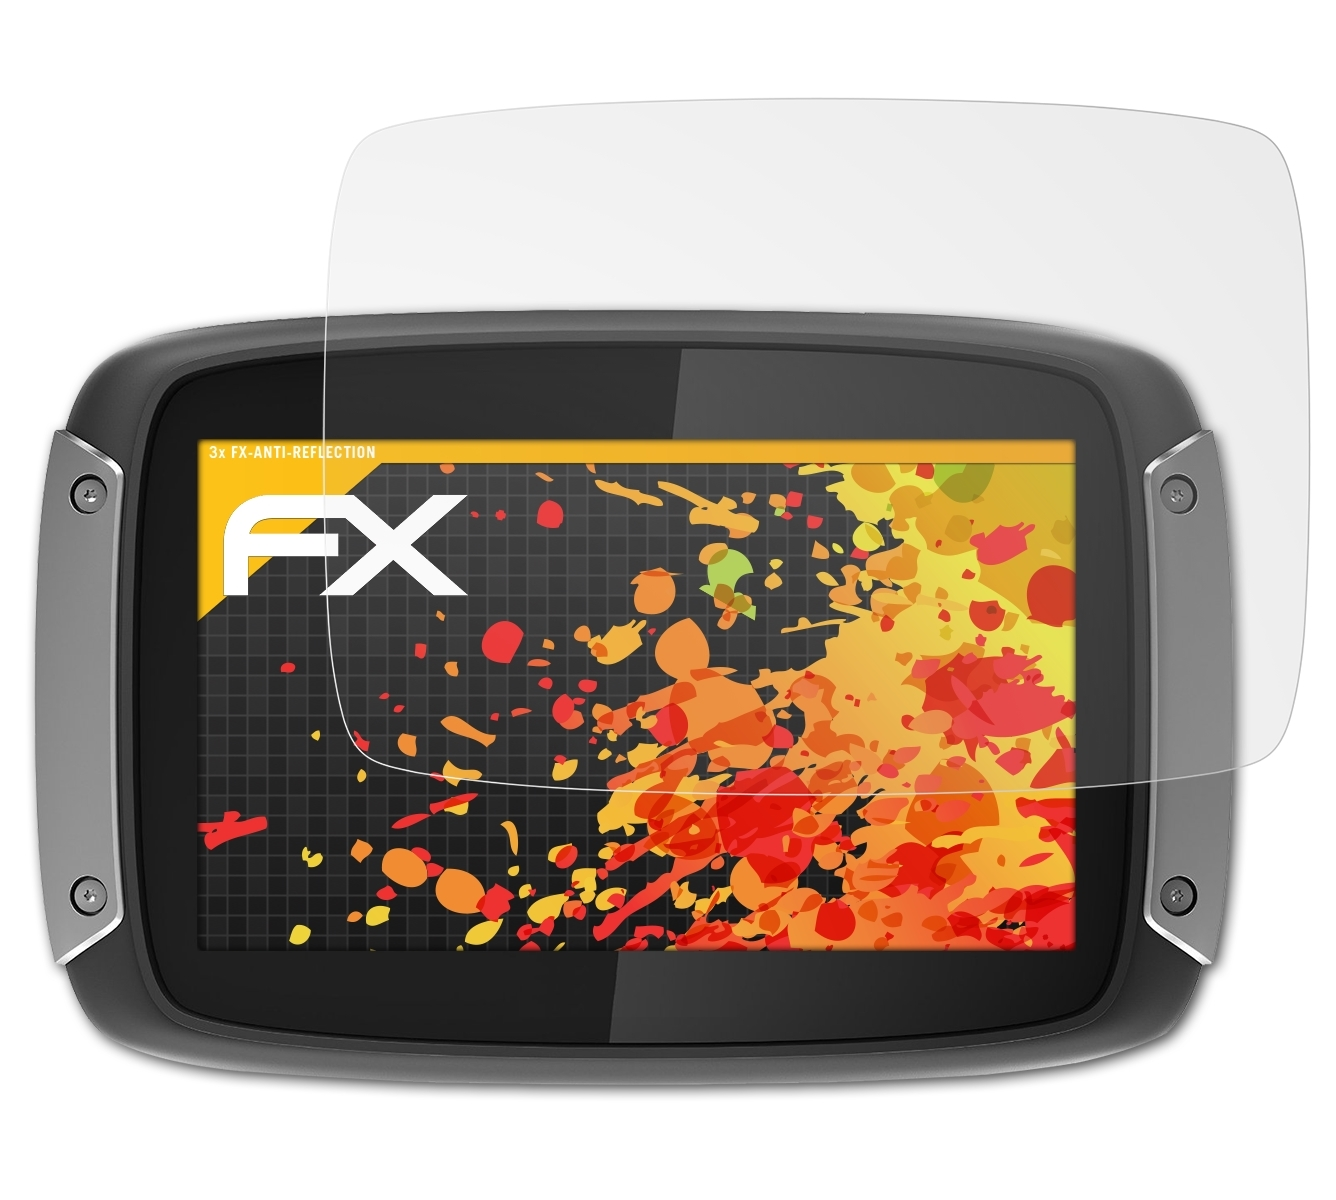 ATFOLIX 3x / Displayschutz(für 400 40 / TomTom 410) Rider FX-Antireflex